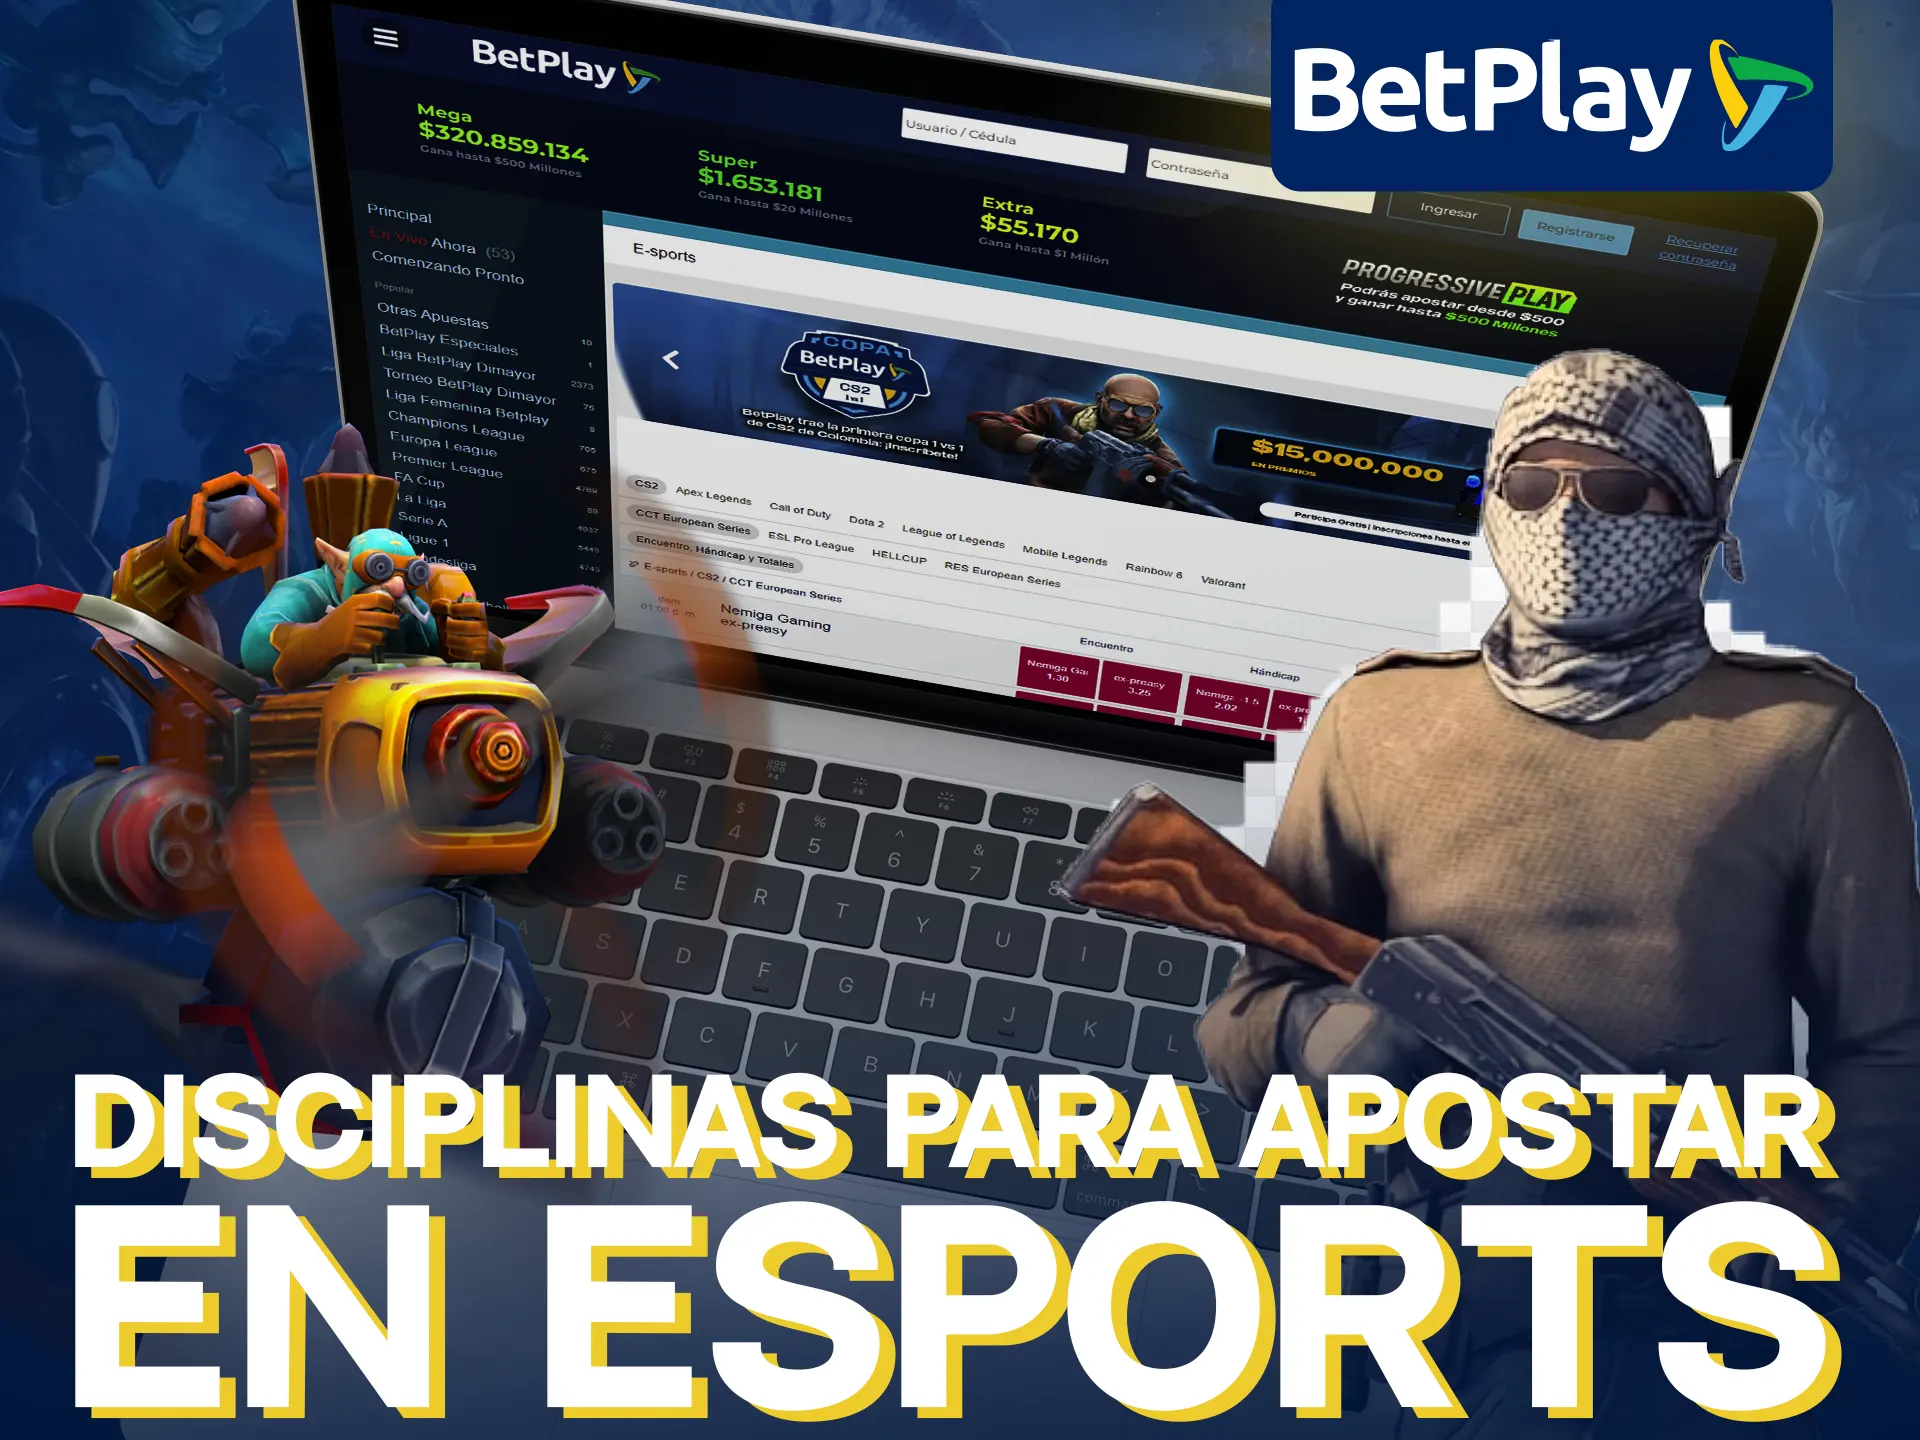 BetPlay ofrece juegos populares para apuestas de deportes electrónicos.